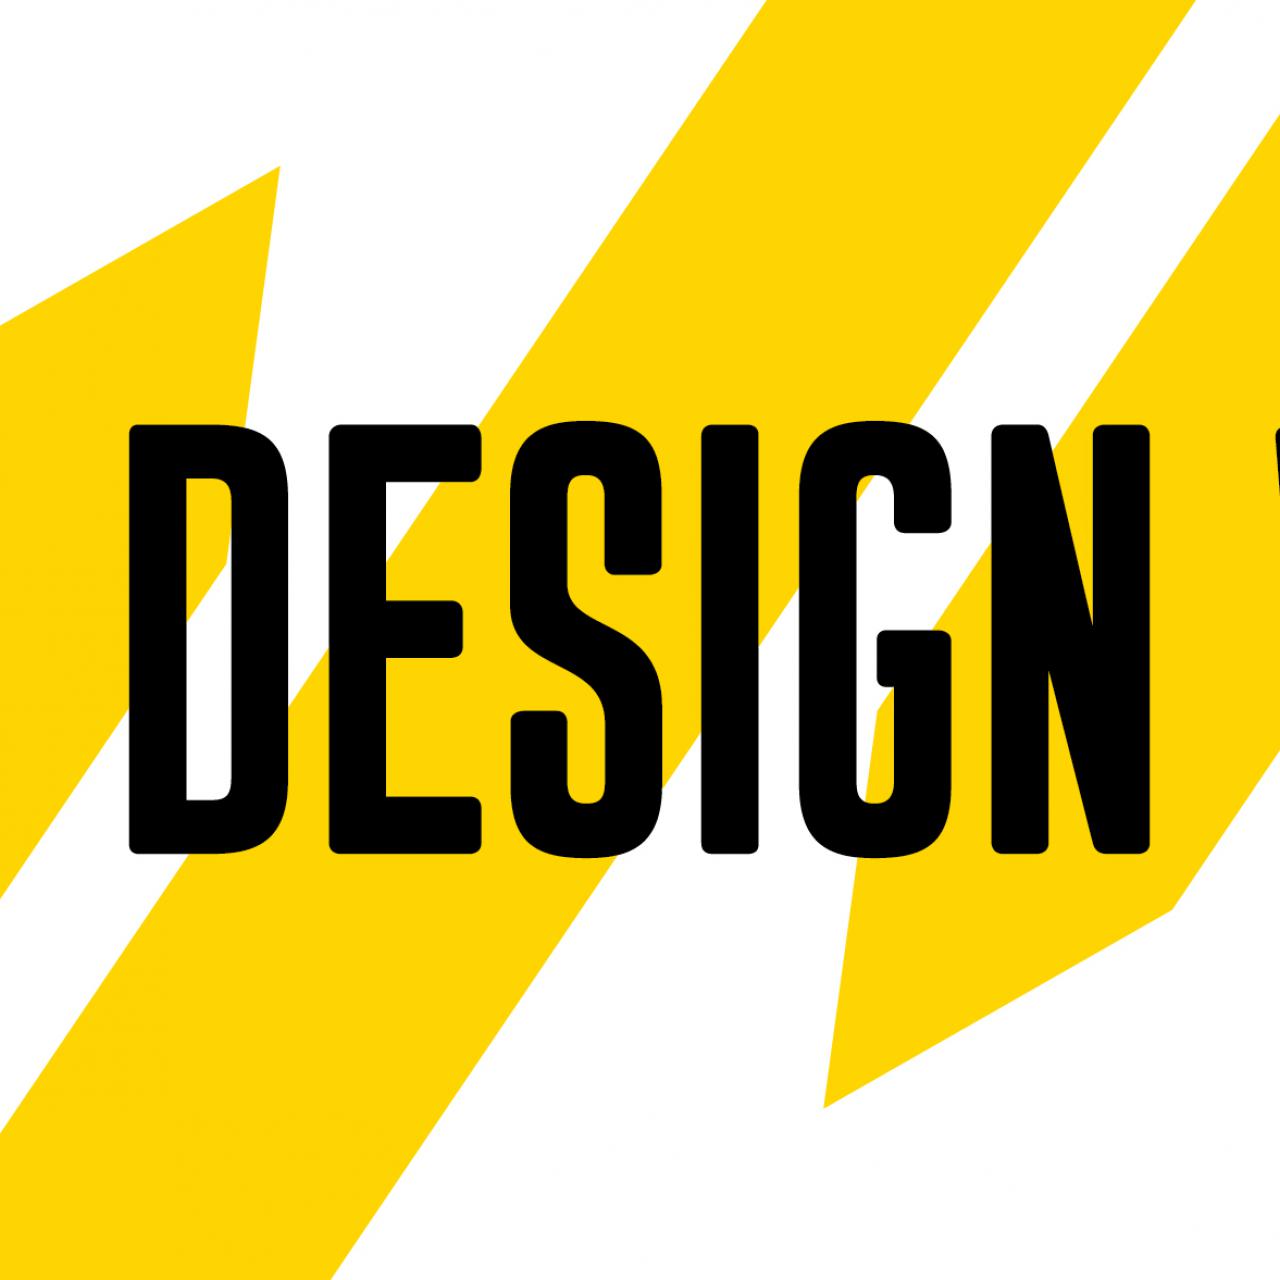 Paris Design Week 2022 : découvrez le programme à venir en septembre !